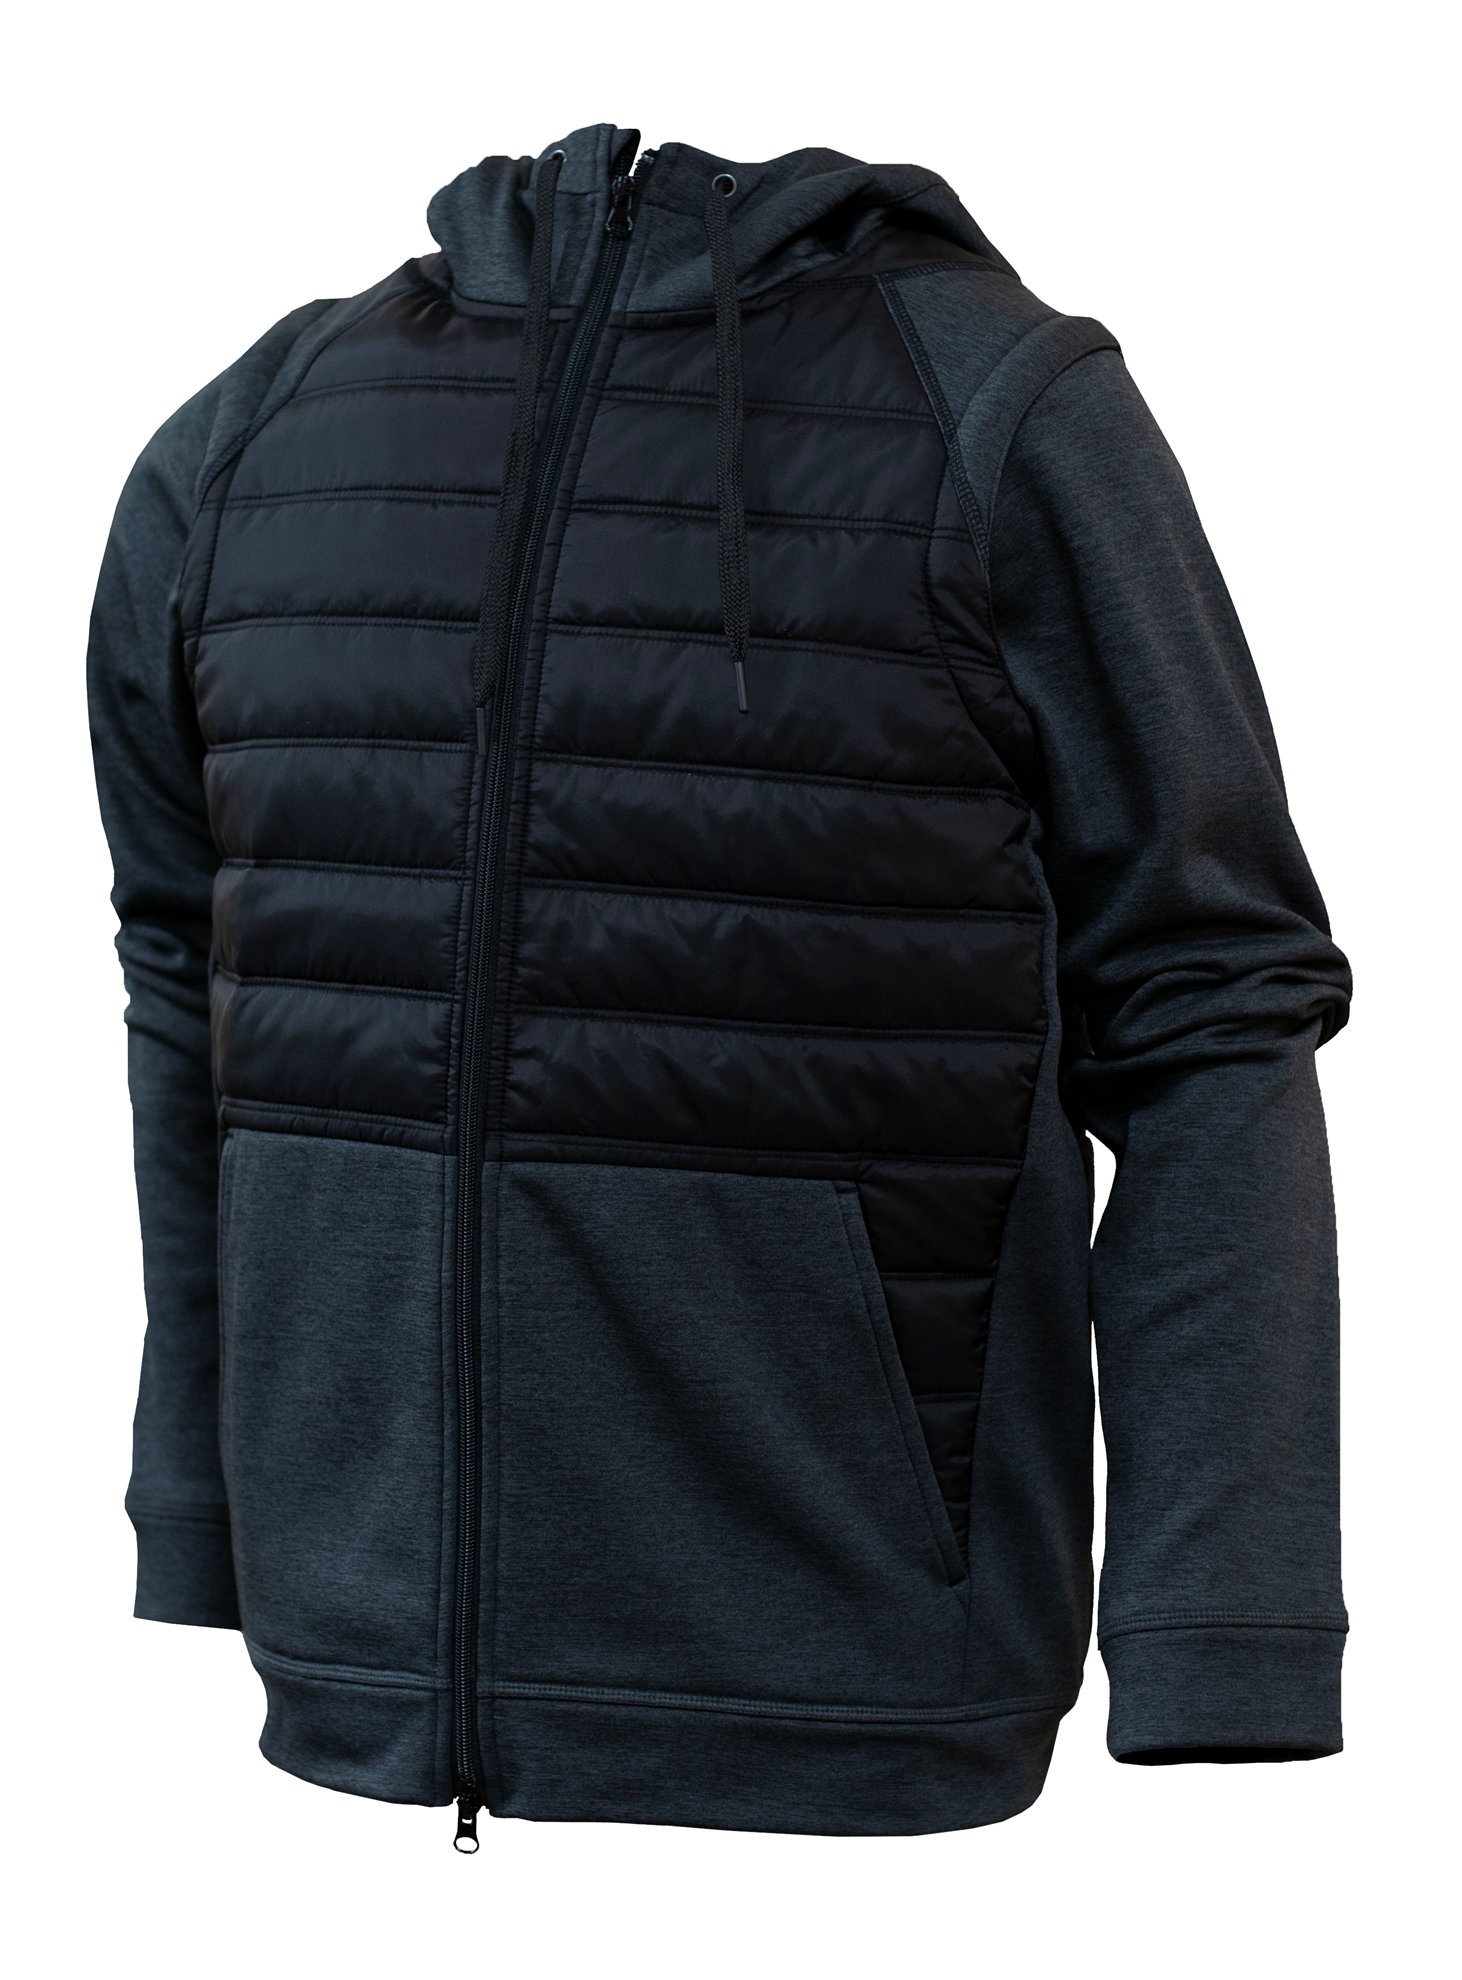 BAW Athletic Wear N248 - Adult Puffer Jacket